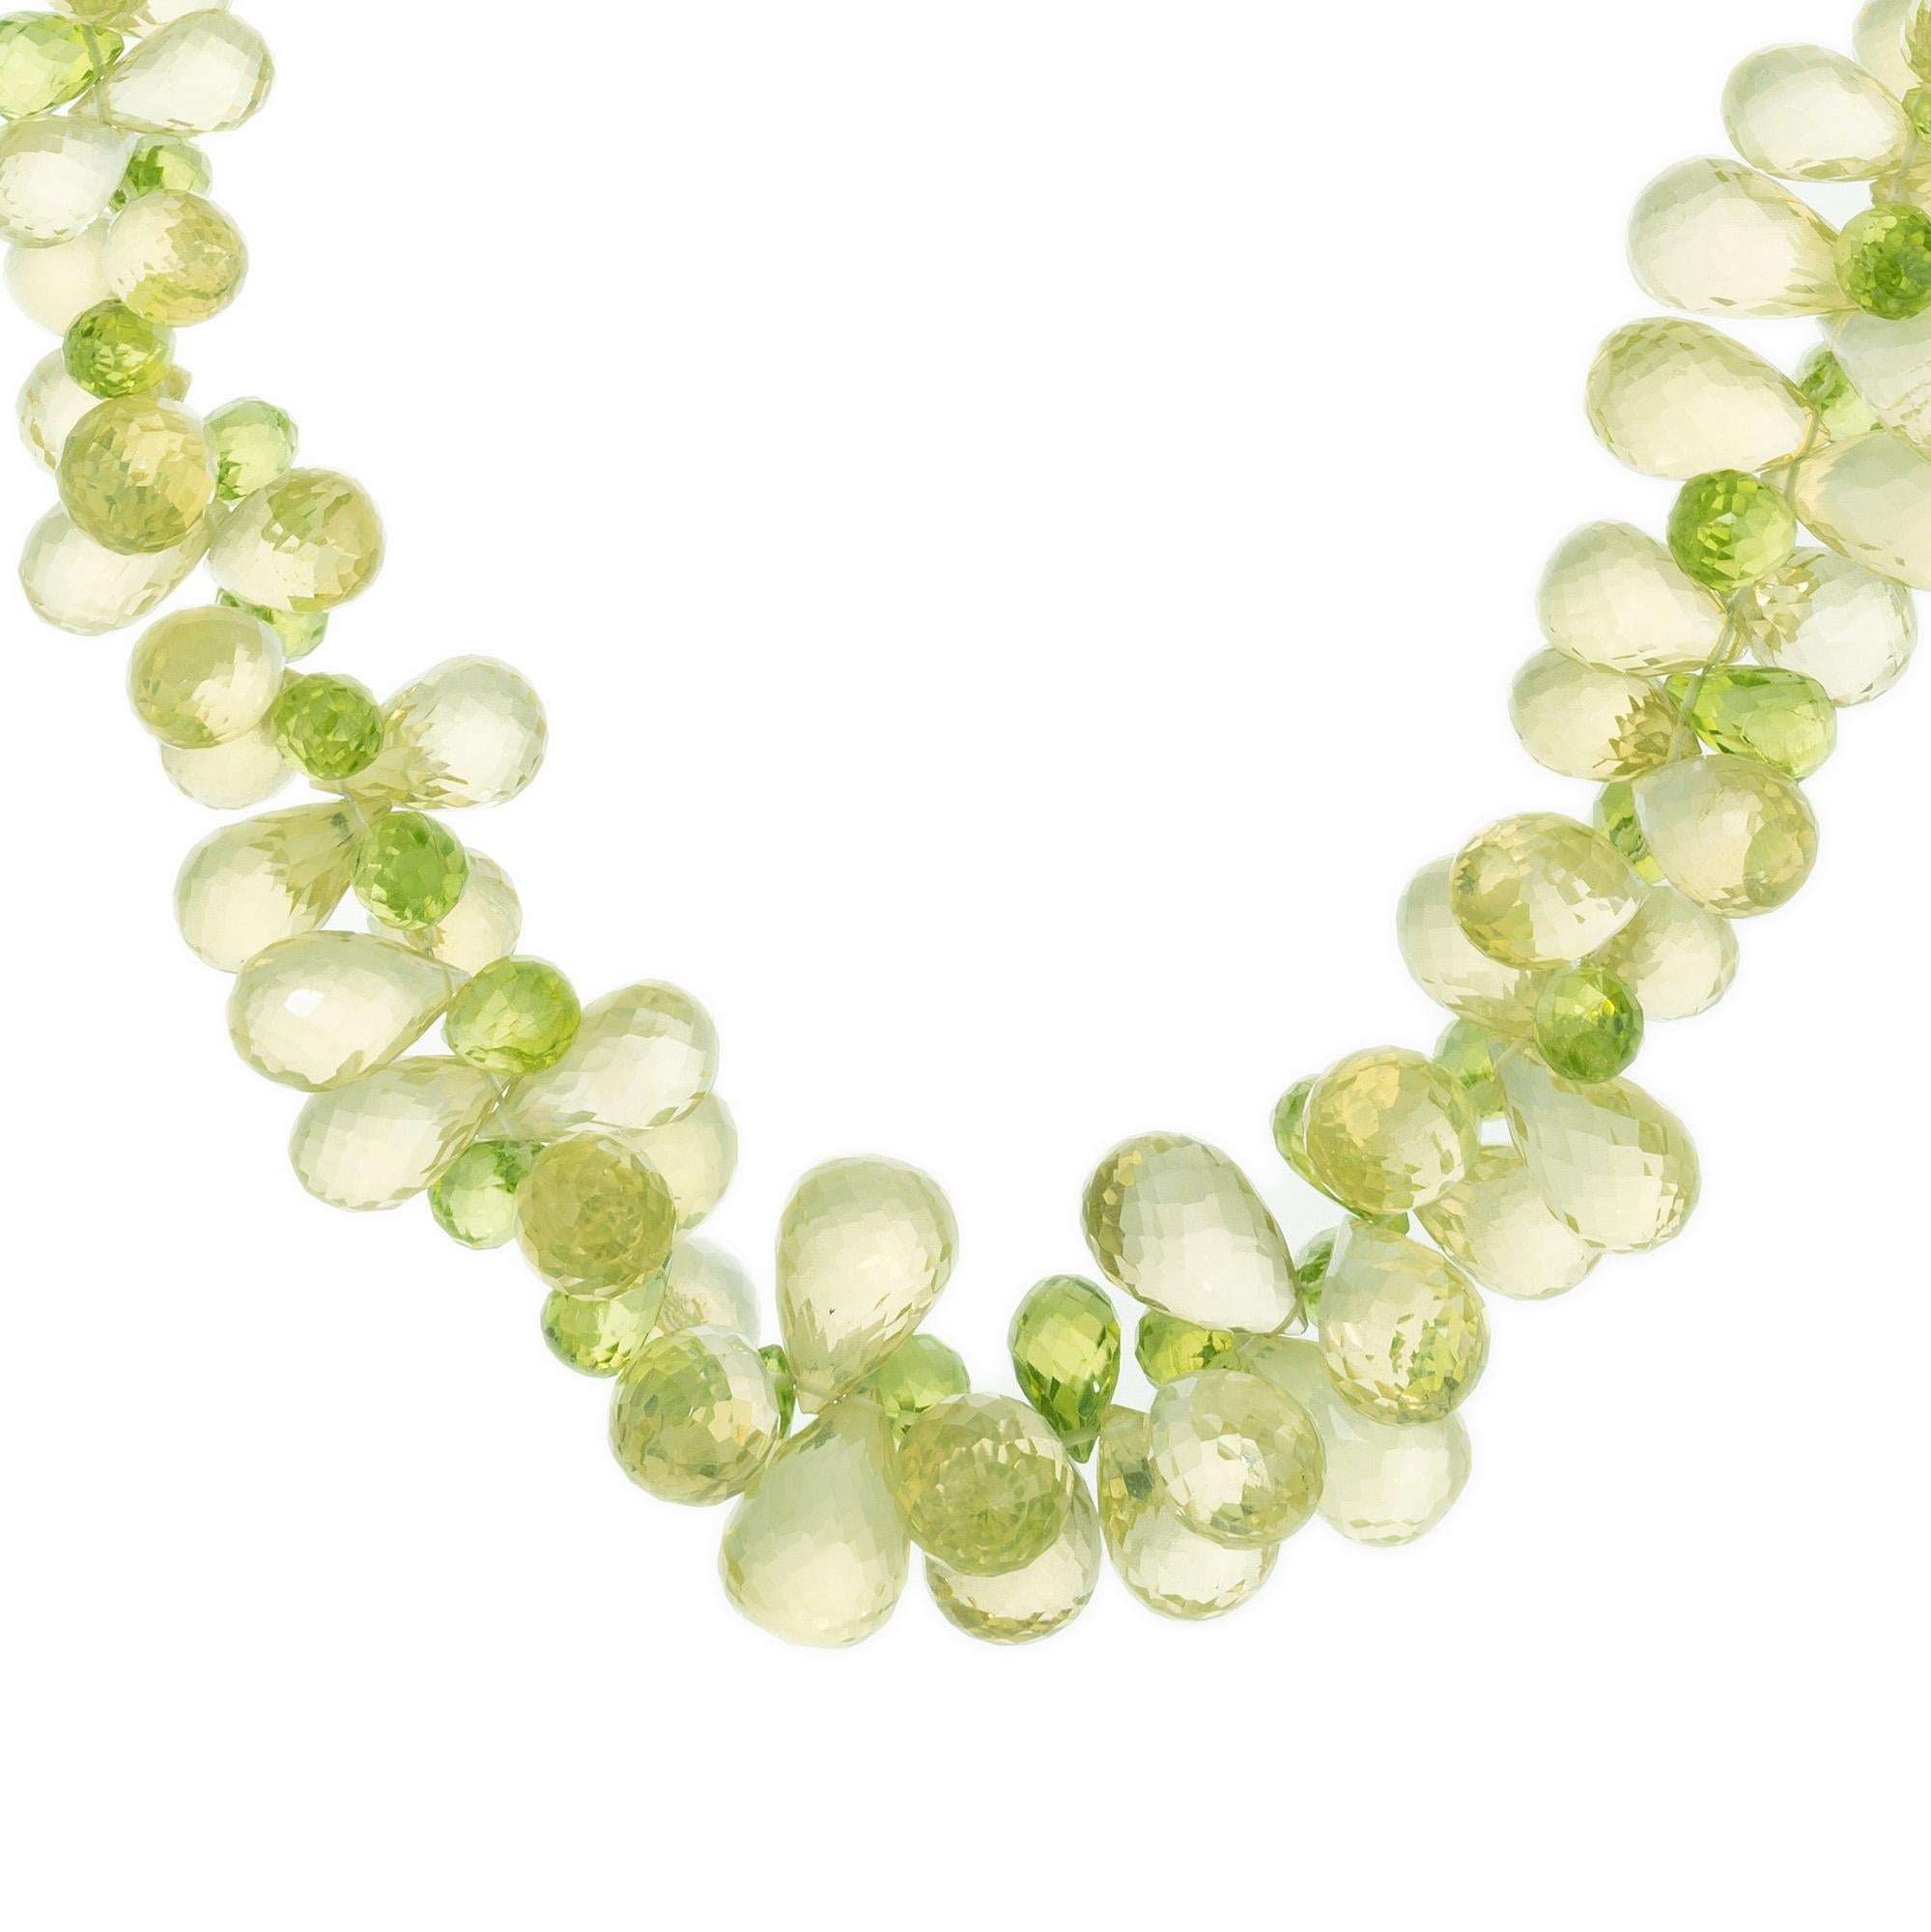 Collier poire péridot et citrine en perles briolettes vertes et jaunes. Les 200 perles briolettes graduées présentent un mélange harmonieux de pierres précieuses péridot et citrine jaunes et vertes, magnifiquement disposées en grappe. Le poids en